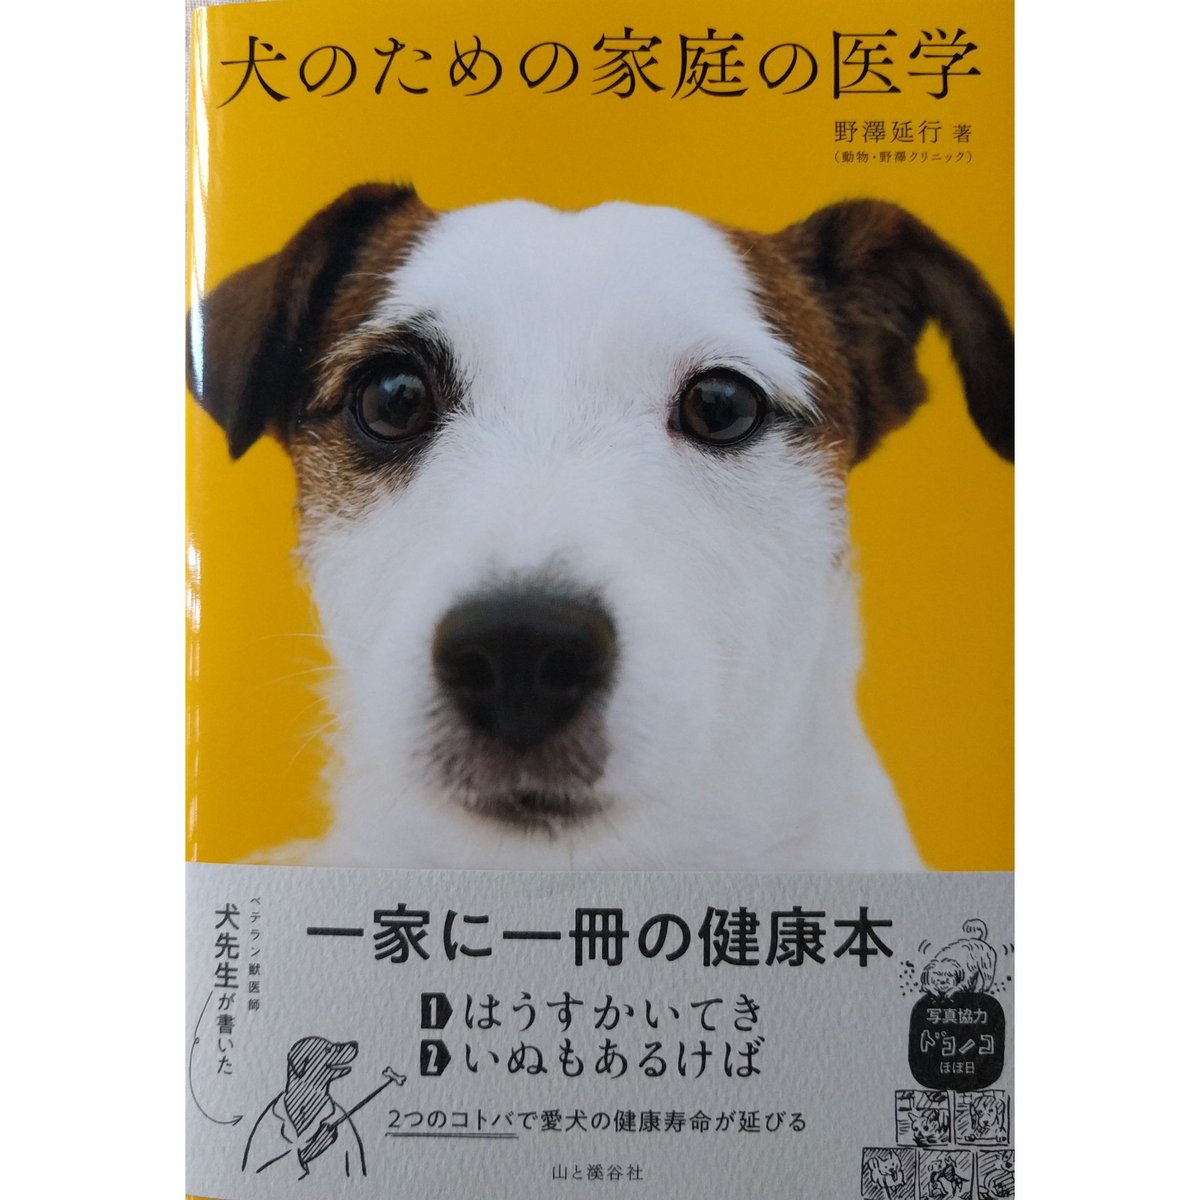 『犬のための家庭の医学』 | nowaki